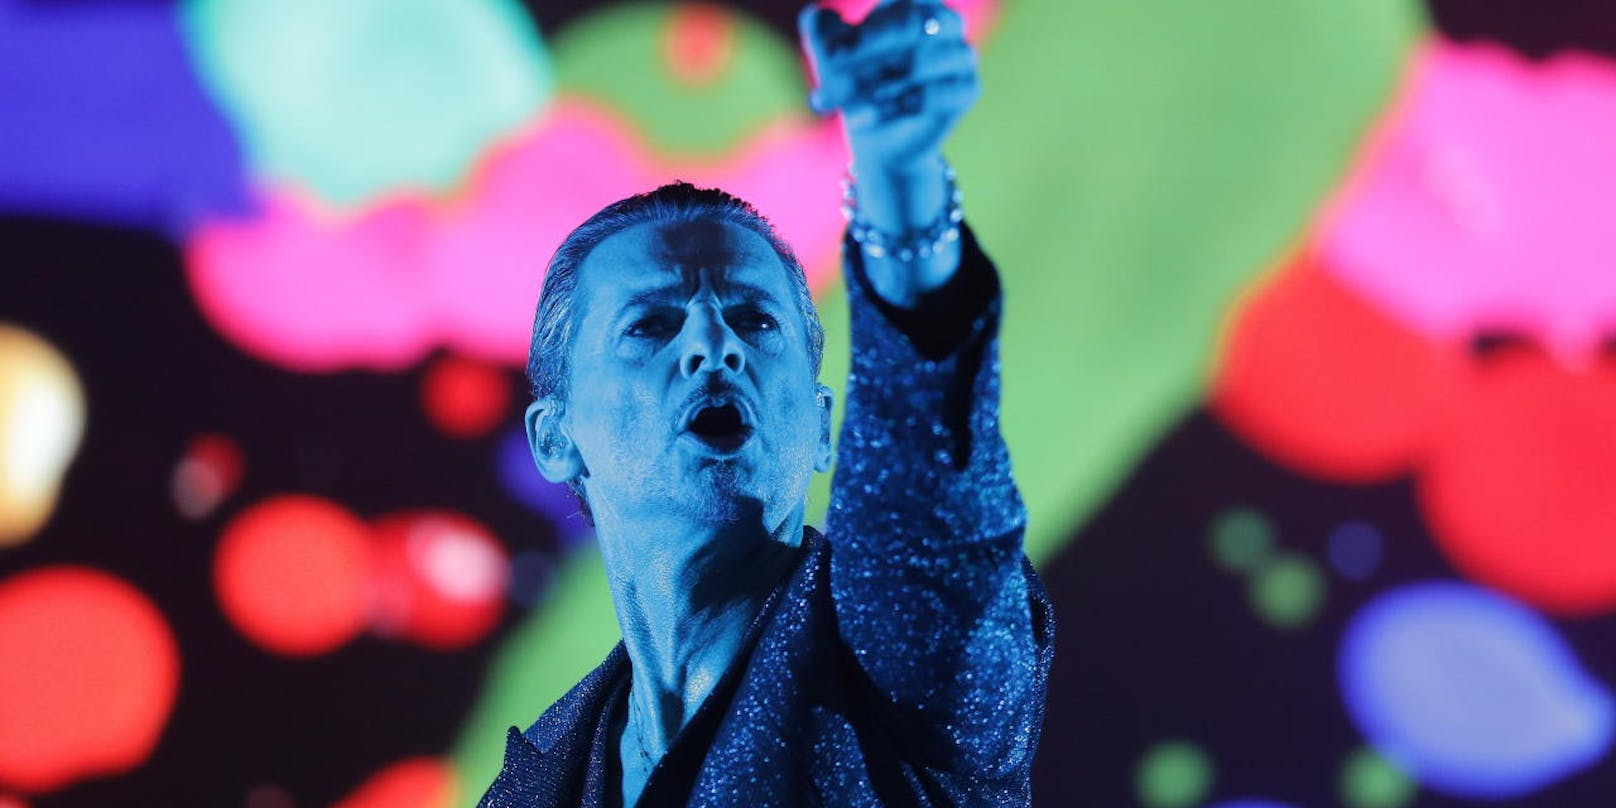 Sänger Dave Gahan von <strong>Depeche Mode</strong> auf der Konzertbühne in Warschau, Polen, im Juli 2017